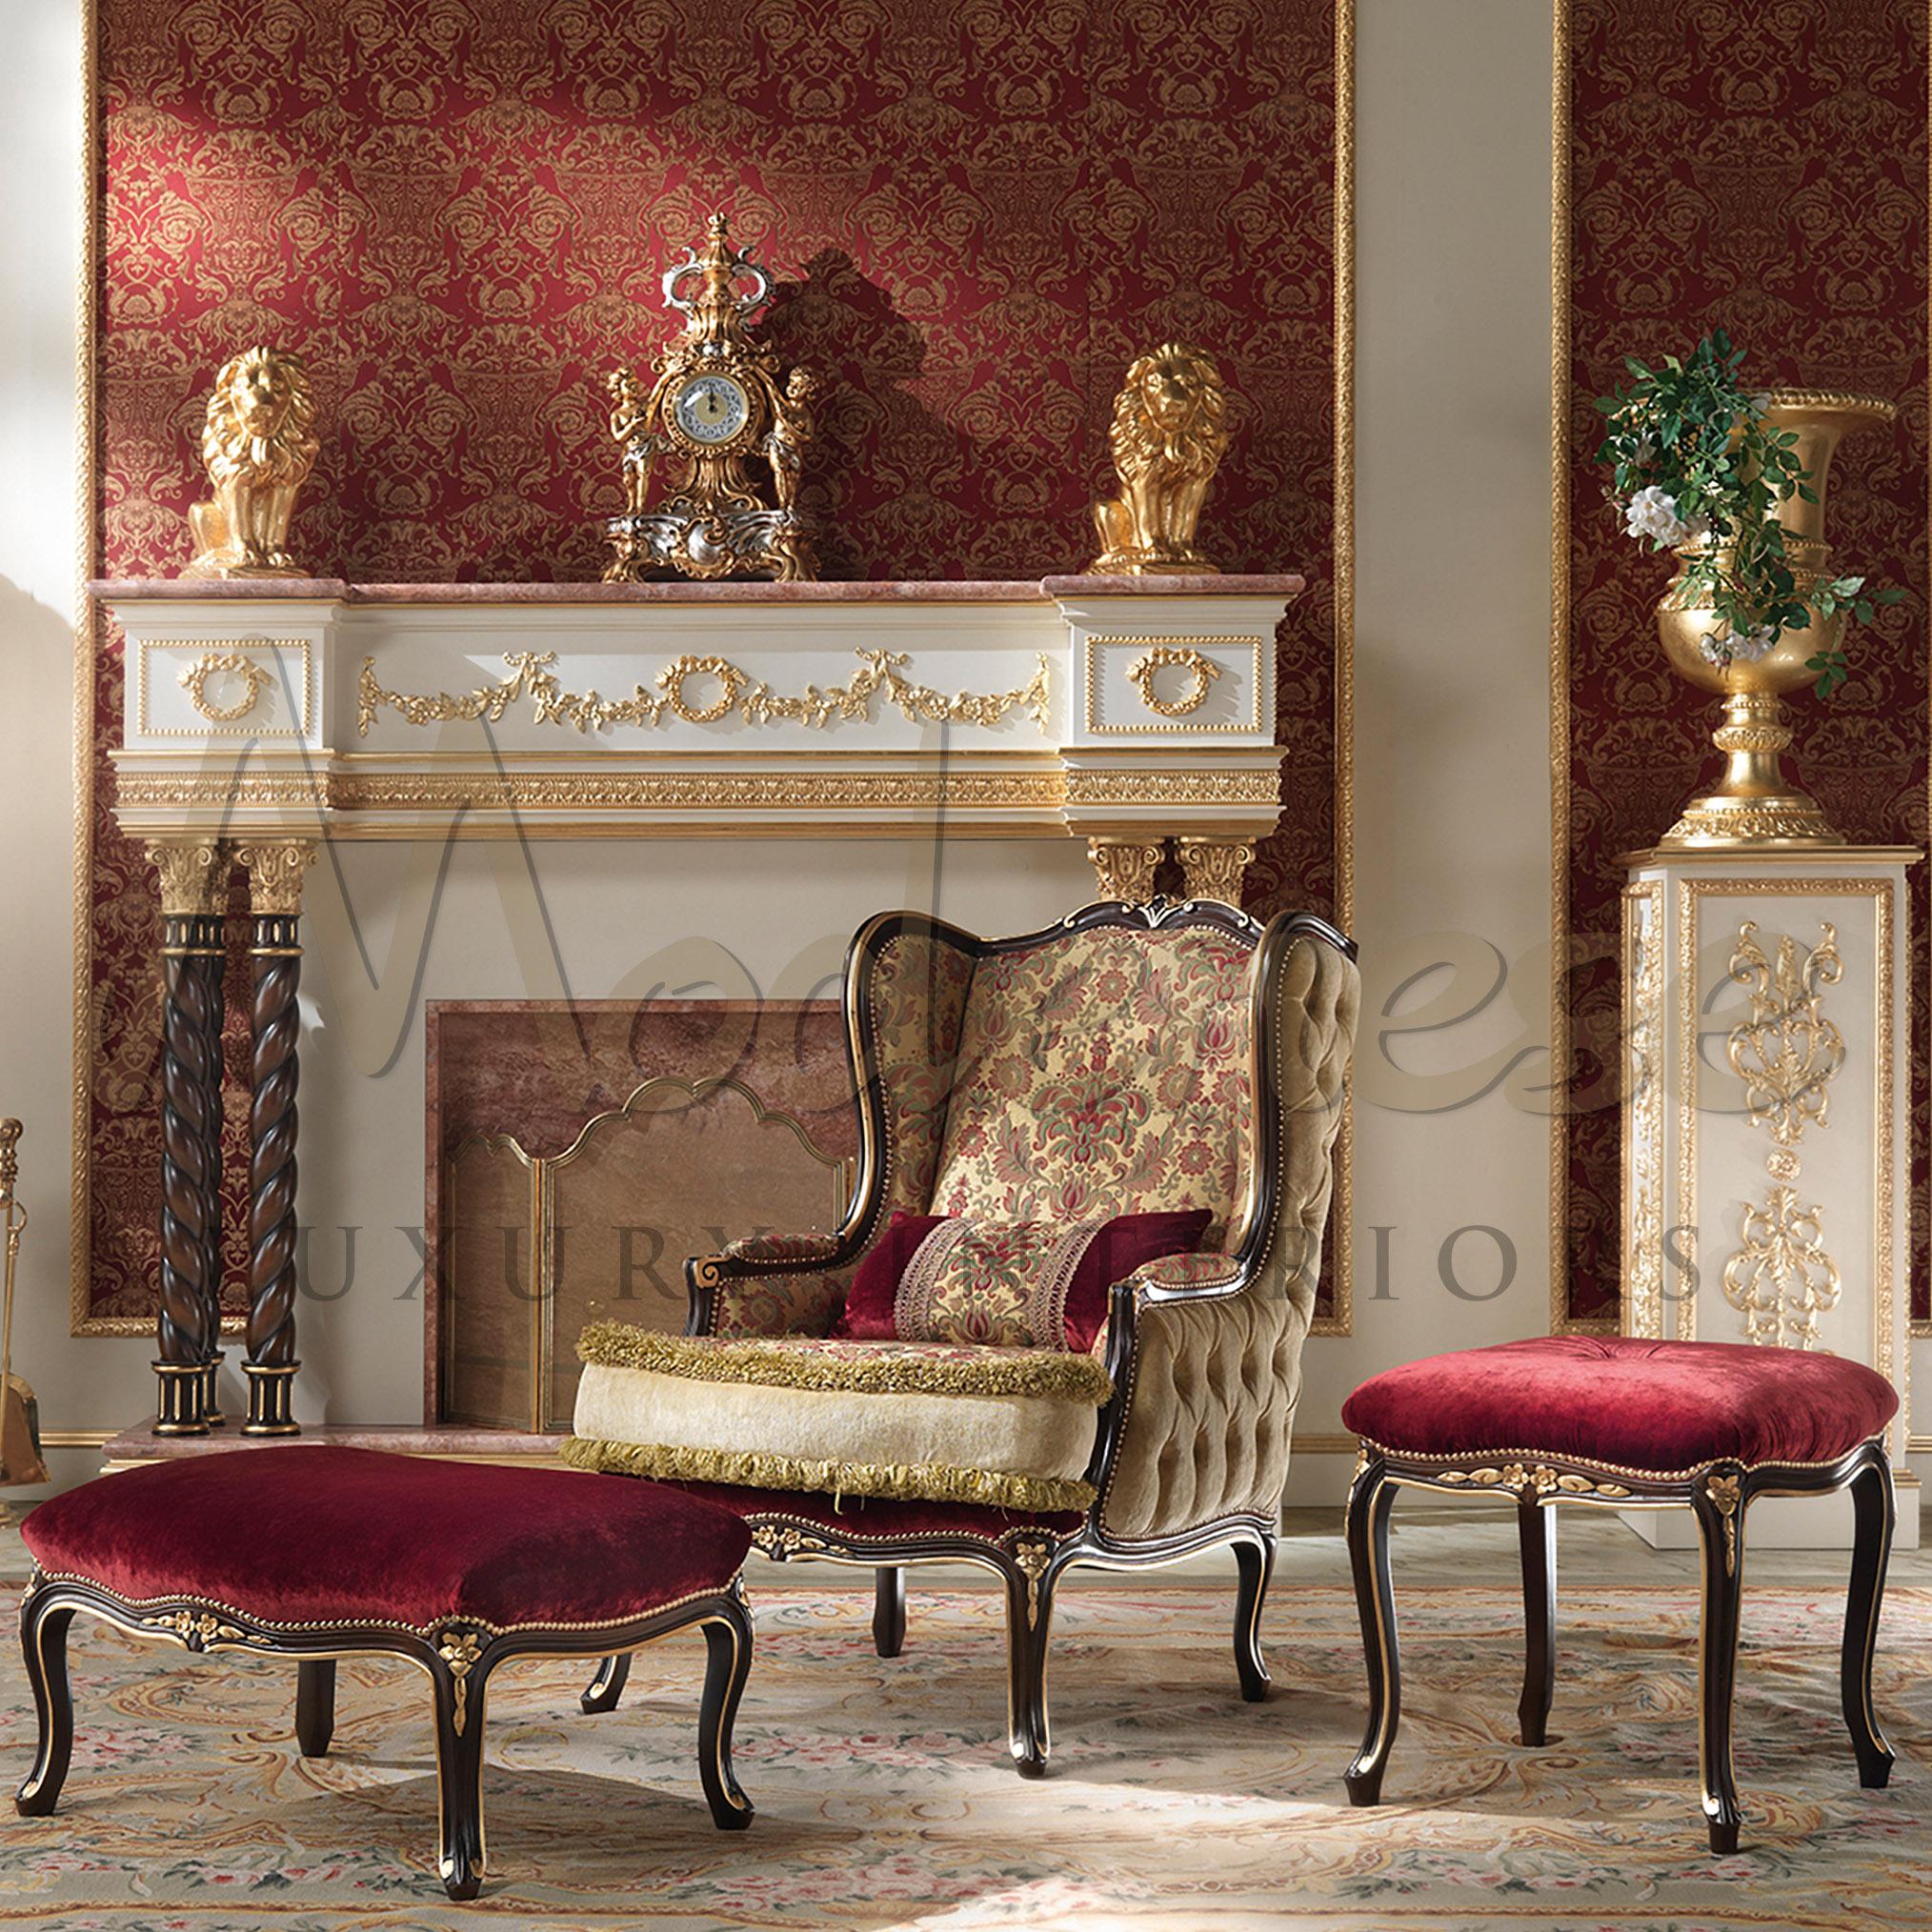 Nutzen Sie Ihre Freizeit sinnvoll und bequem: Versuchen Sie, auf weichen, zarten Polstern zu sitzen, wie sie in den eleganten Poufs von Modenese Interiors, einem hochwertigen Möbelhersteller aus Padua, Italien, zu finden sind. Dieses Exemplar hat